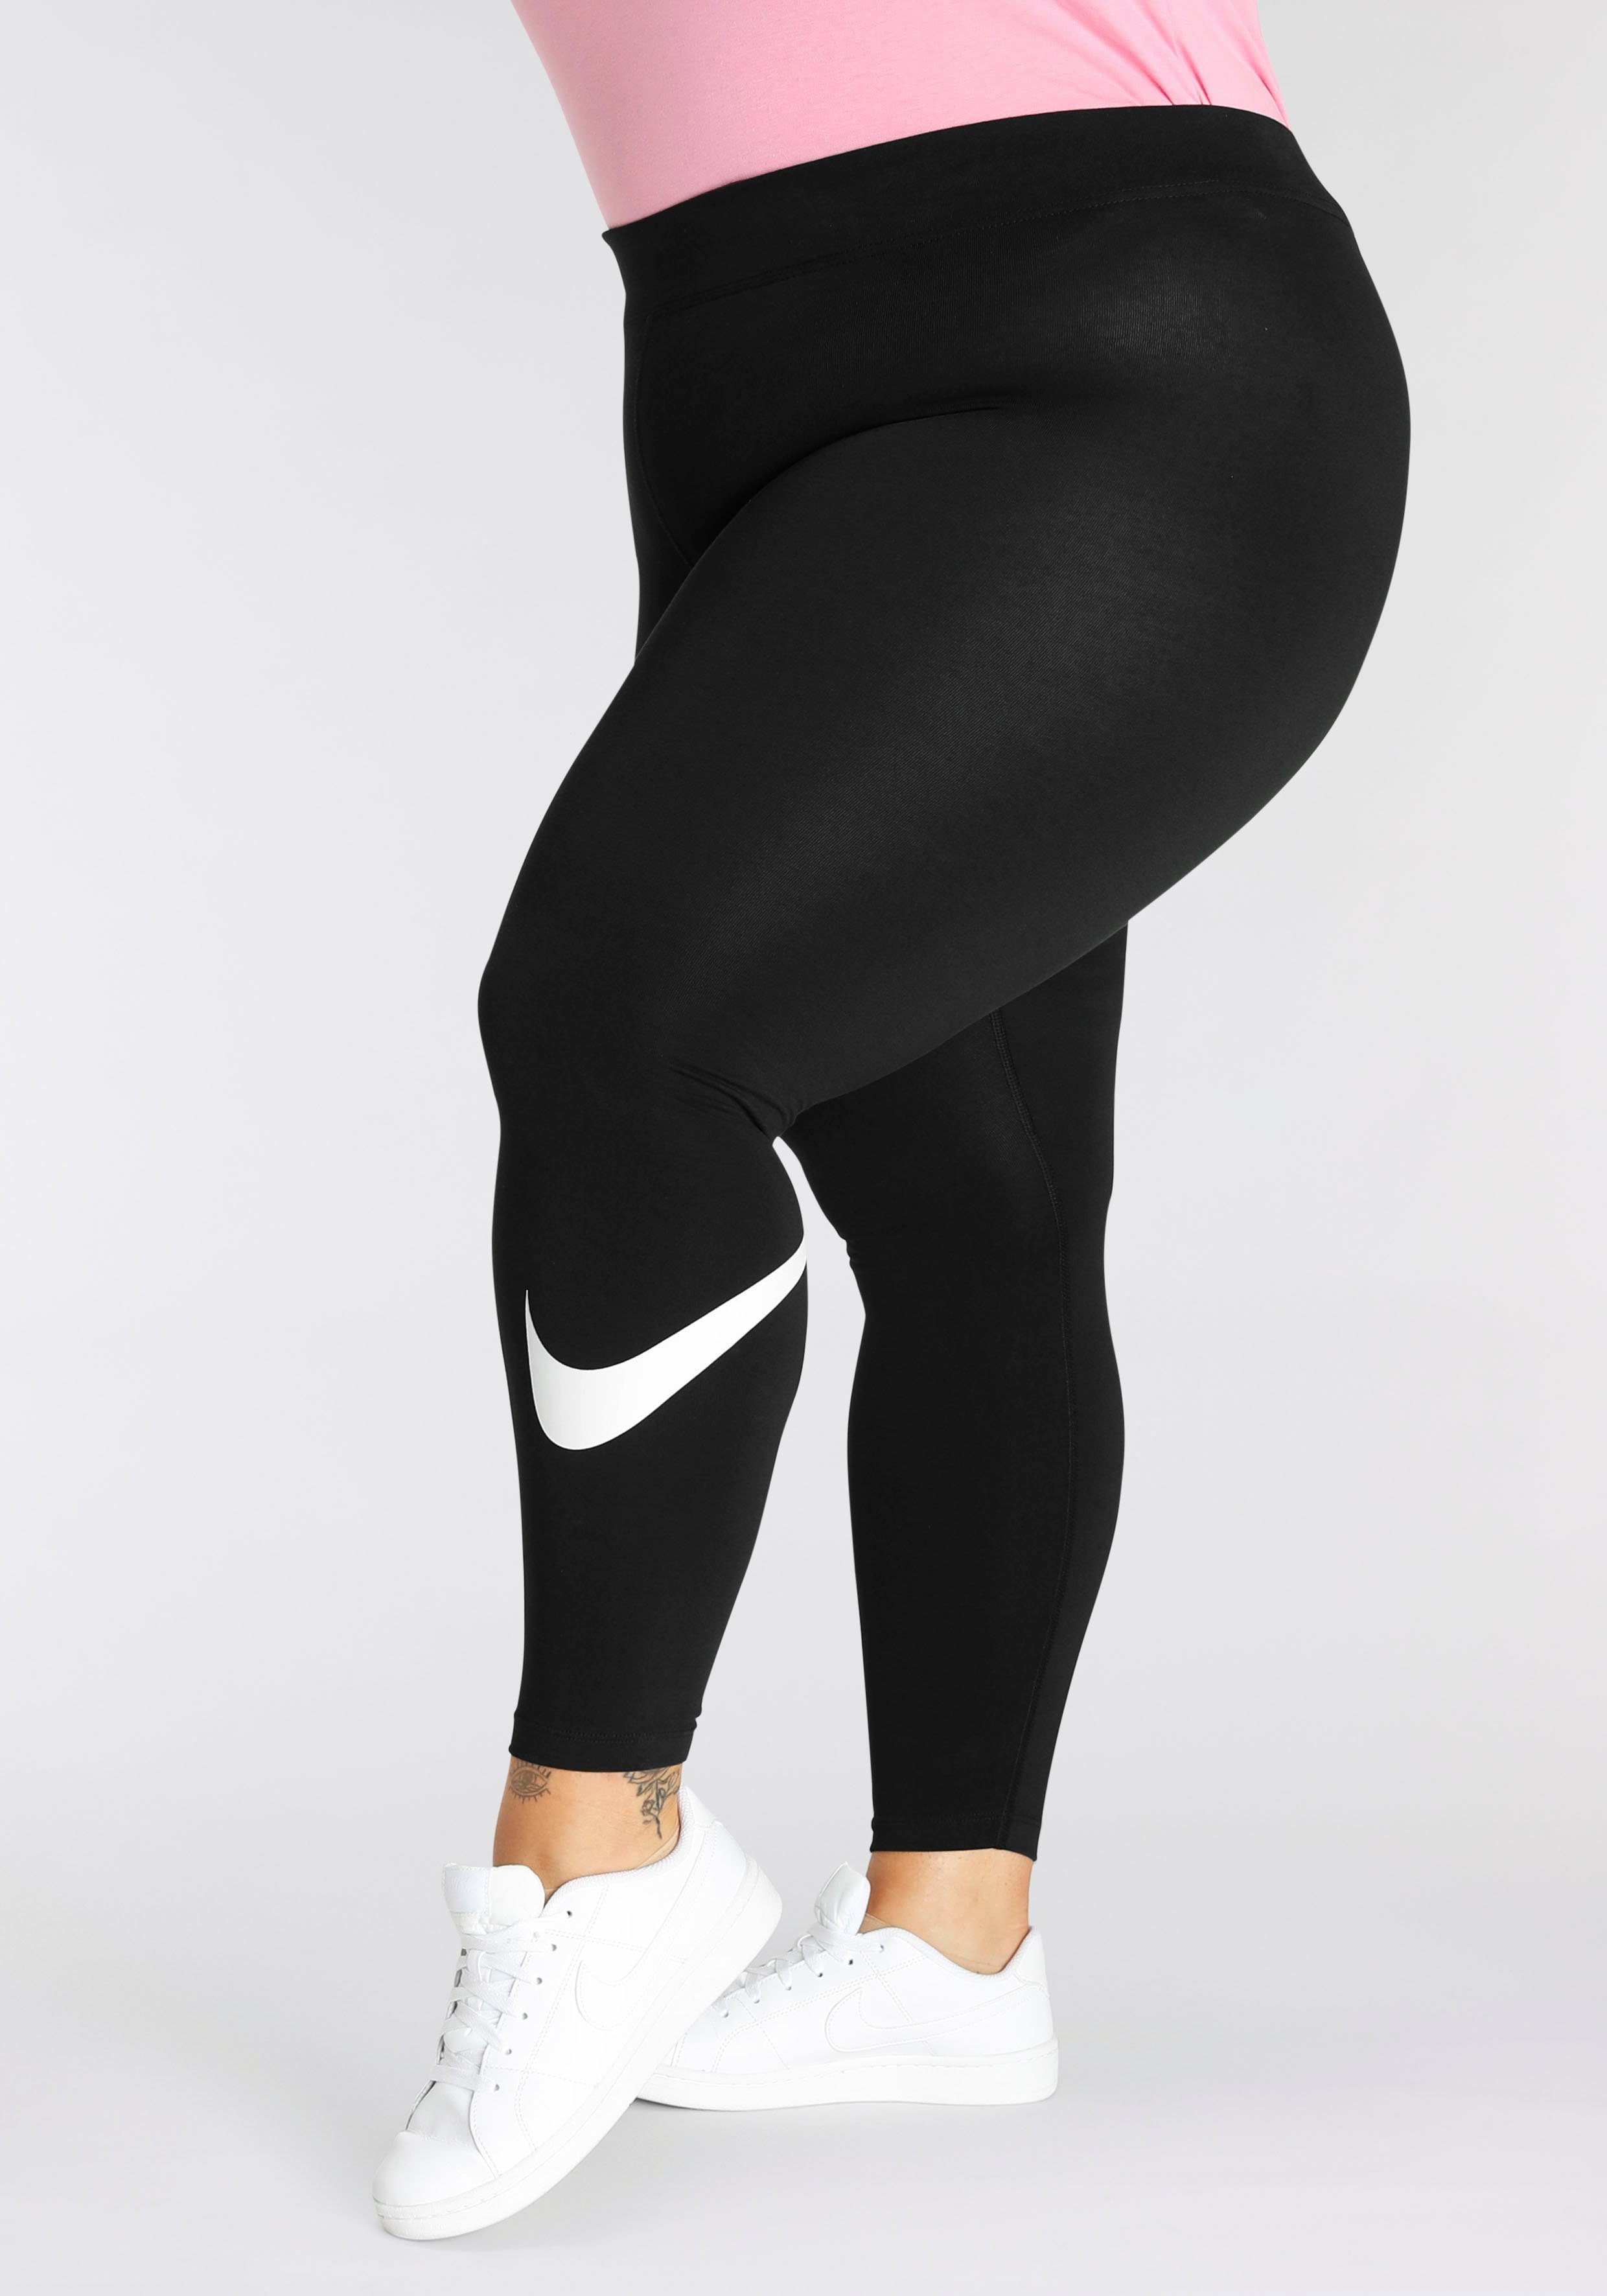 Nike Sportswear Leggings Essential Women's Leggings Mid-Rise Size) Swoosh (Plus